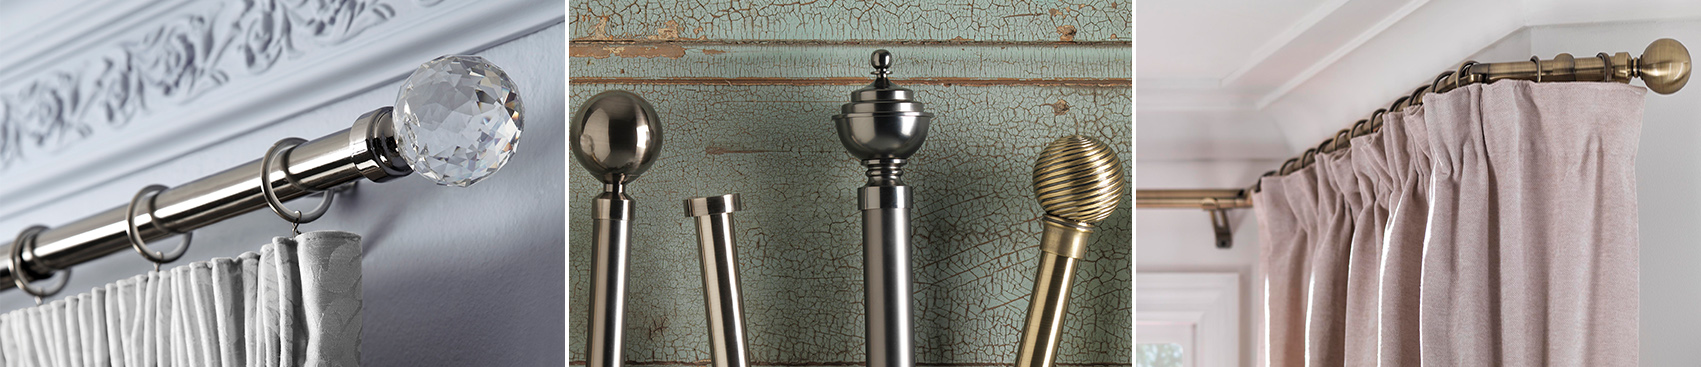 Sunflex Metal Poles - Pole Sets - 400cm - 300-399cm